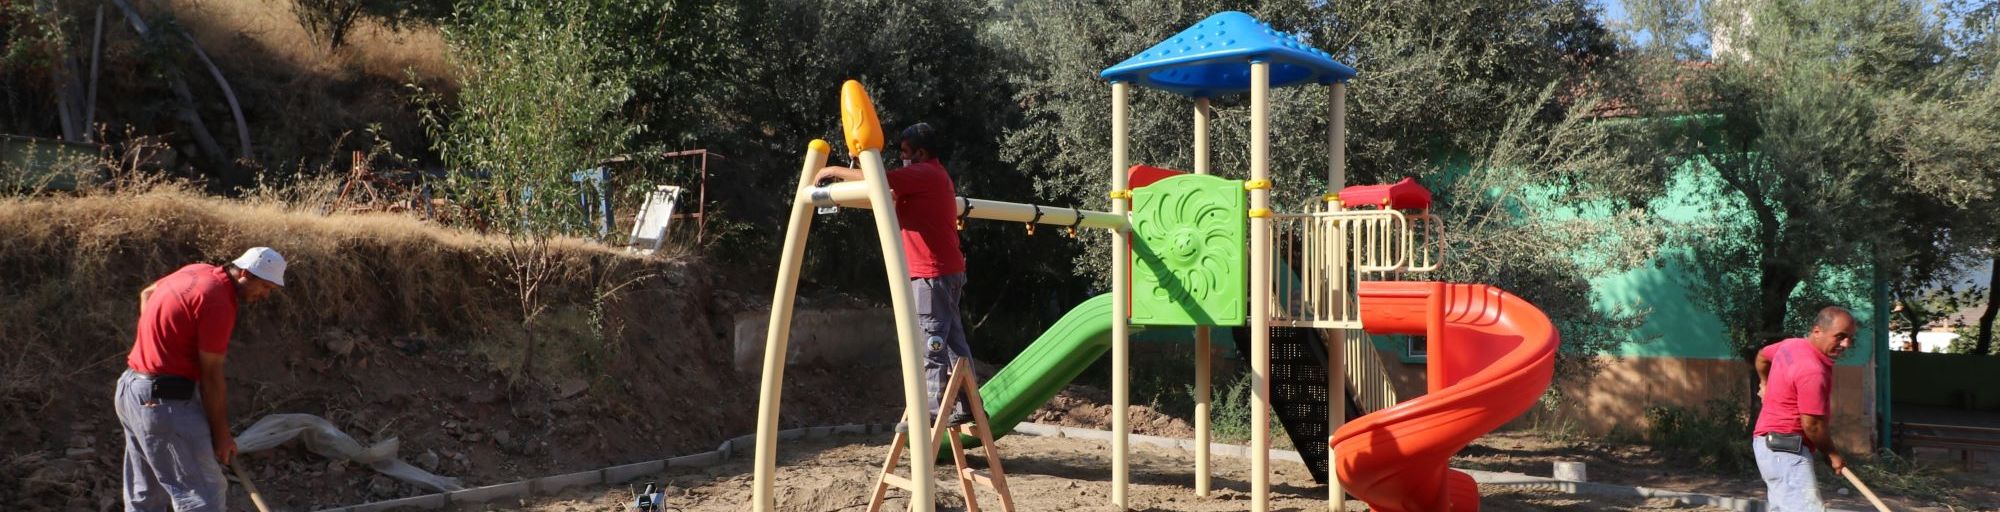 Turgutlu Belediyesinden Akçapınar Mahallesine Yeni Çocuk Oyun Alanı